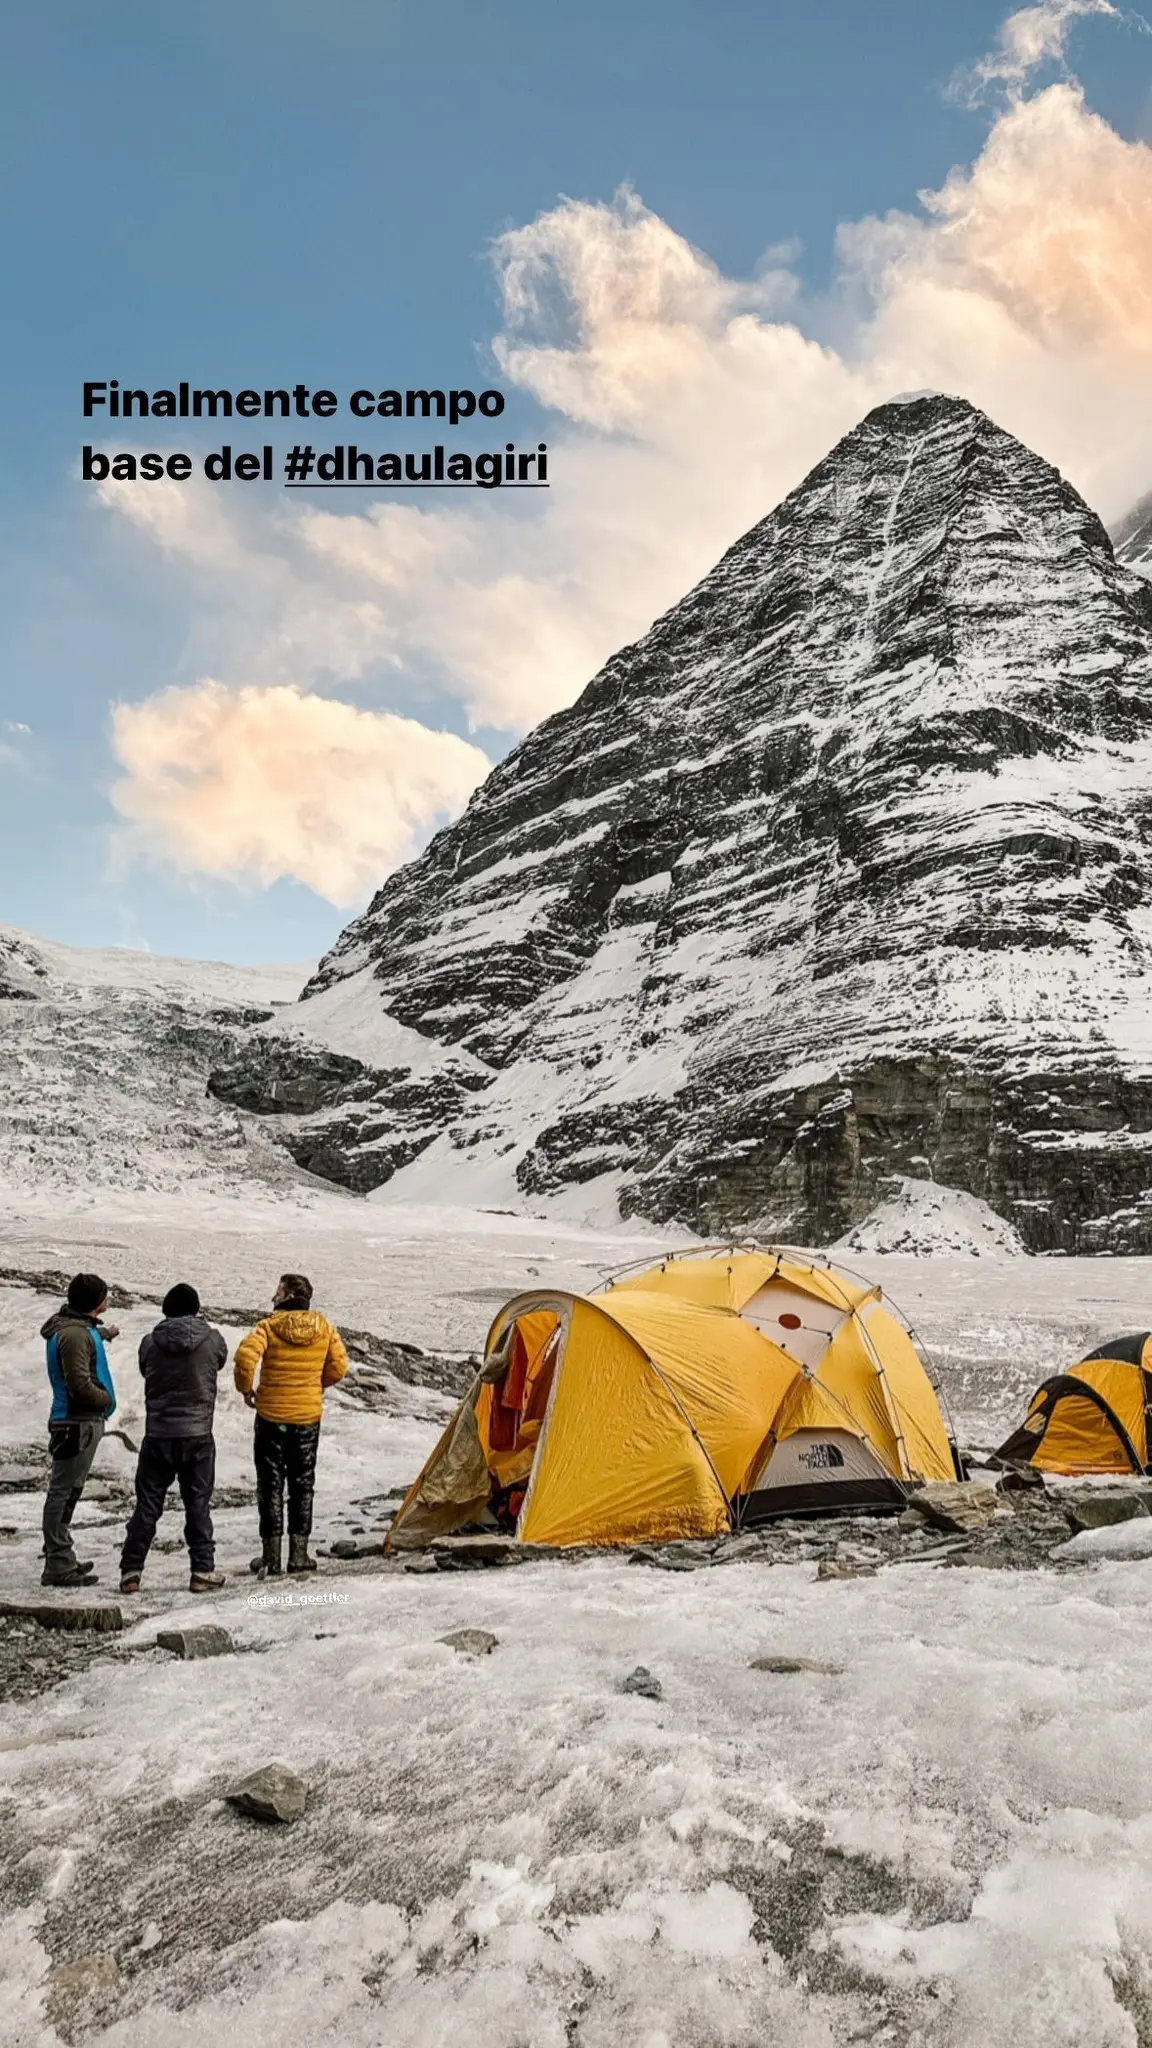 Базовий табір біля підніжжя Дхаулагірі (Dhaulagiri, 8167 м). Фото Hervé Barmasse 